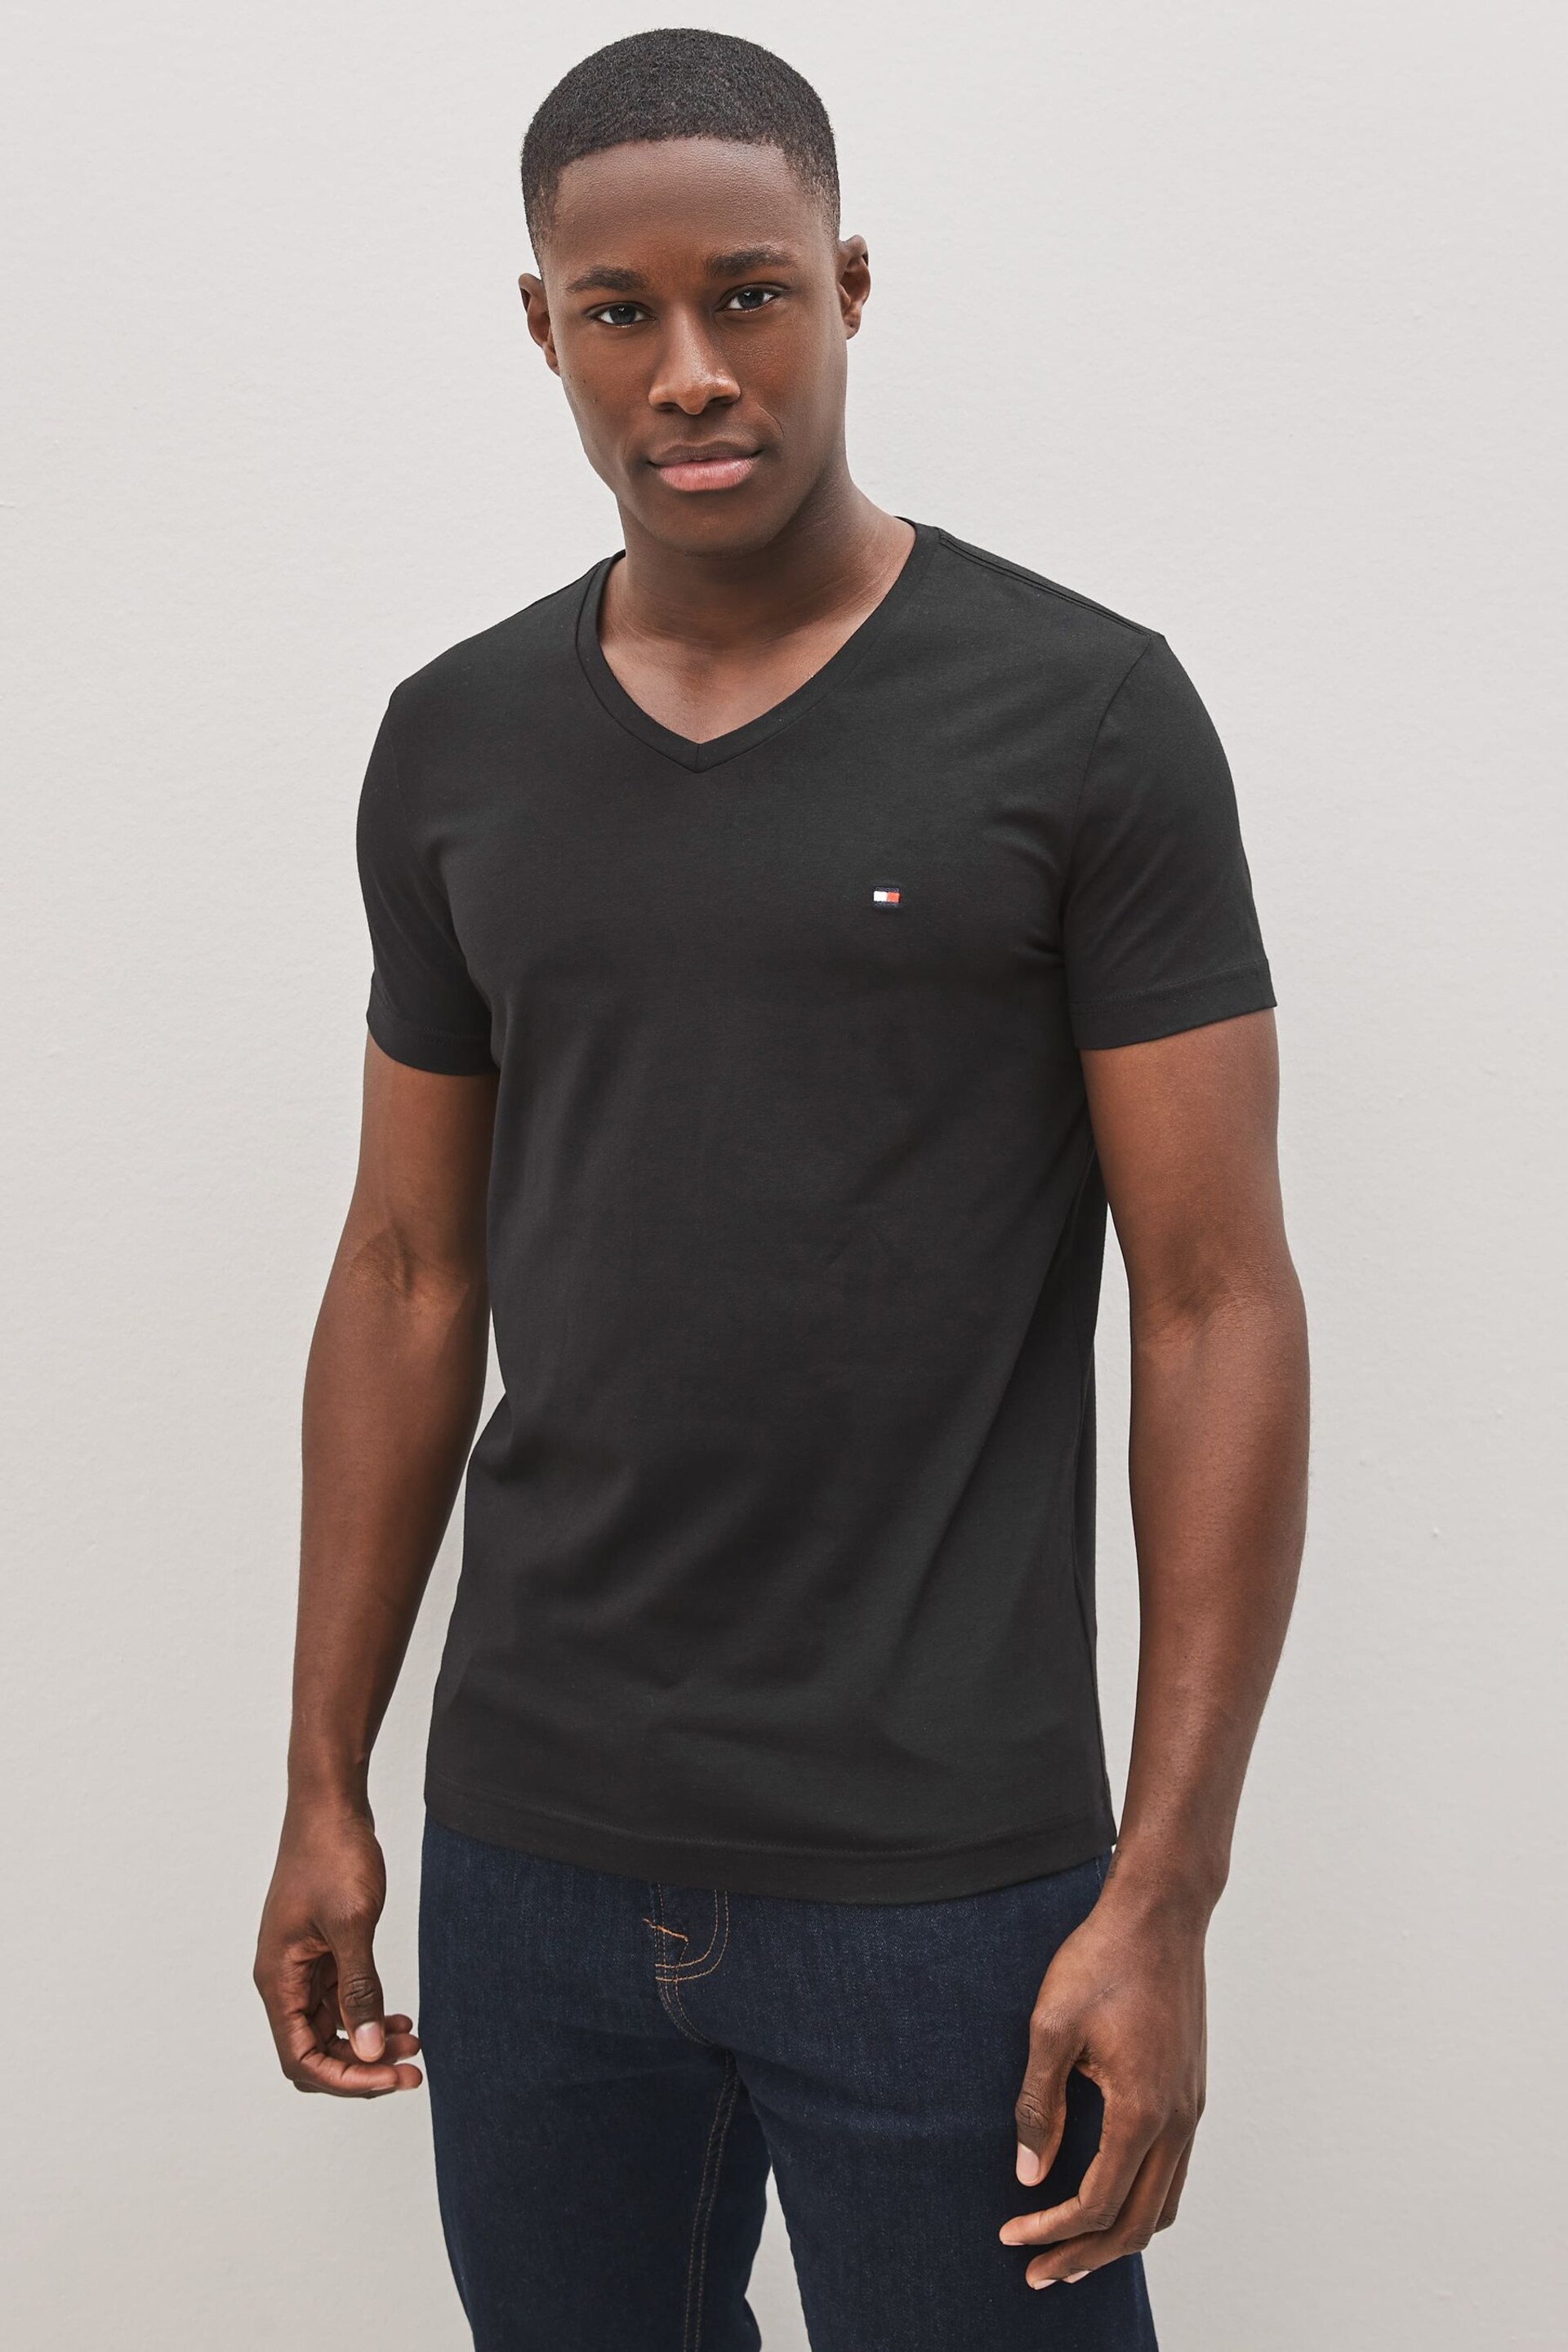 Tommy Hilfiger Black Core Stretch Slim Fit V-Neck T-Shirt - Image 1 of 4